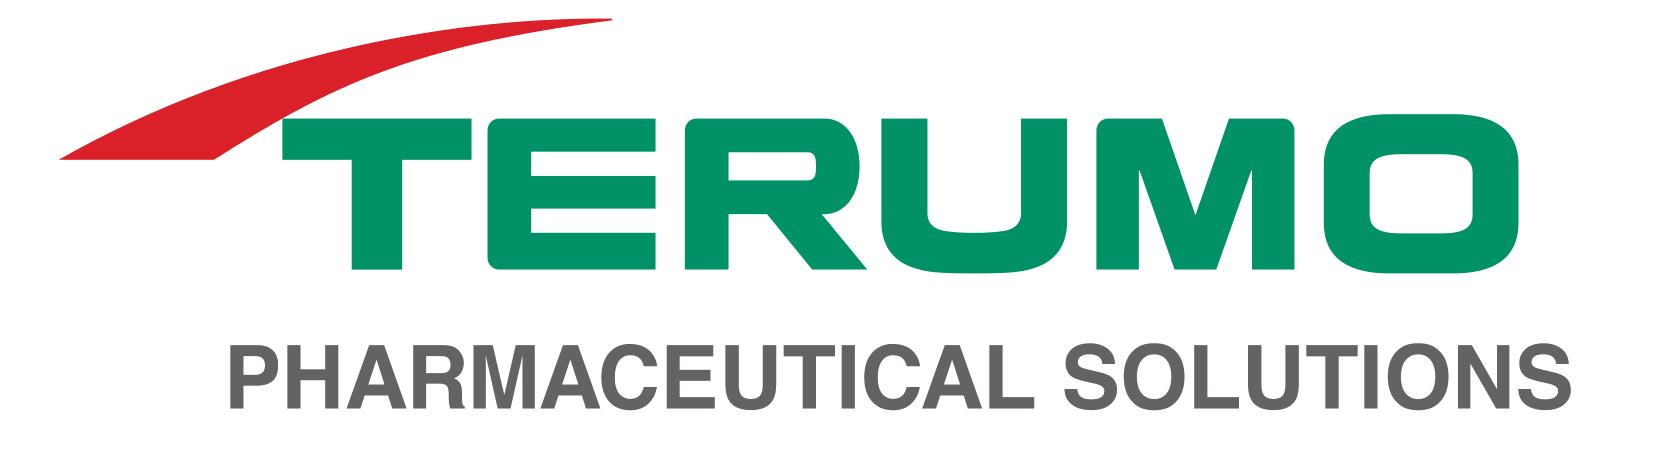 Terumo Pharmaceutical Solutions